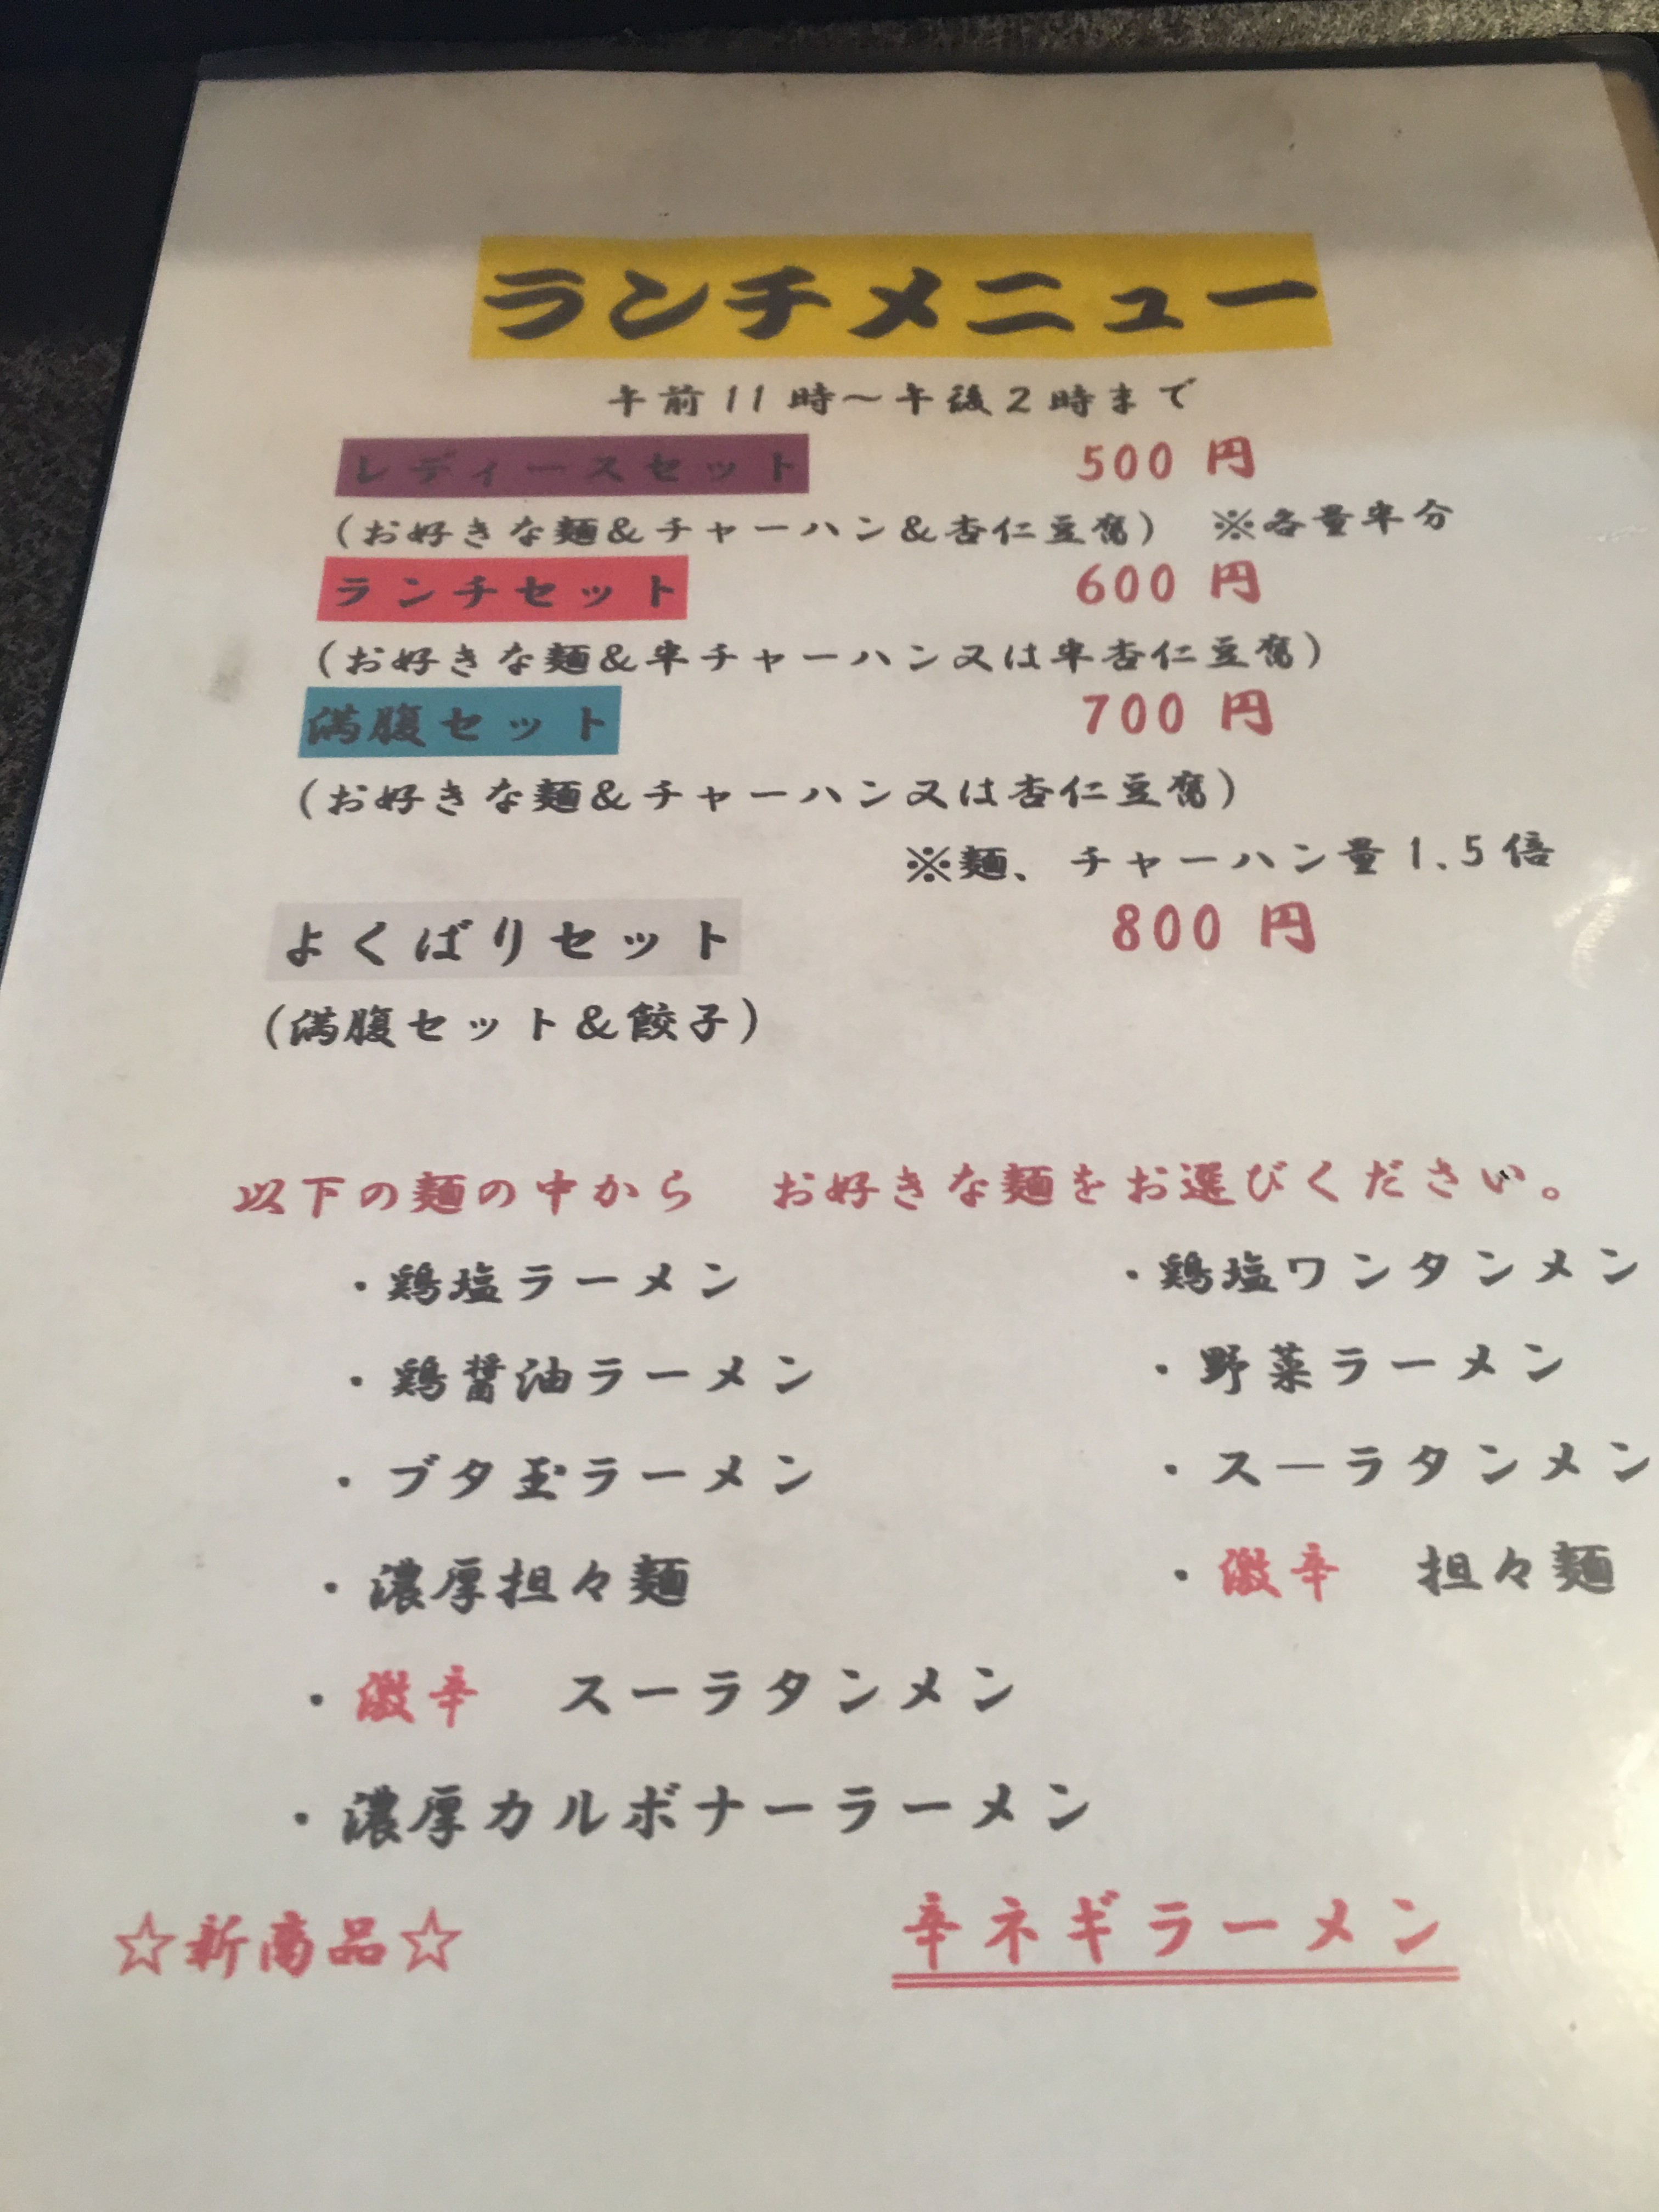 青森 俺のイケ麺のカルボナーラーメン 旅 食べ歩き ときどきクッキング